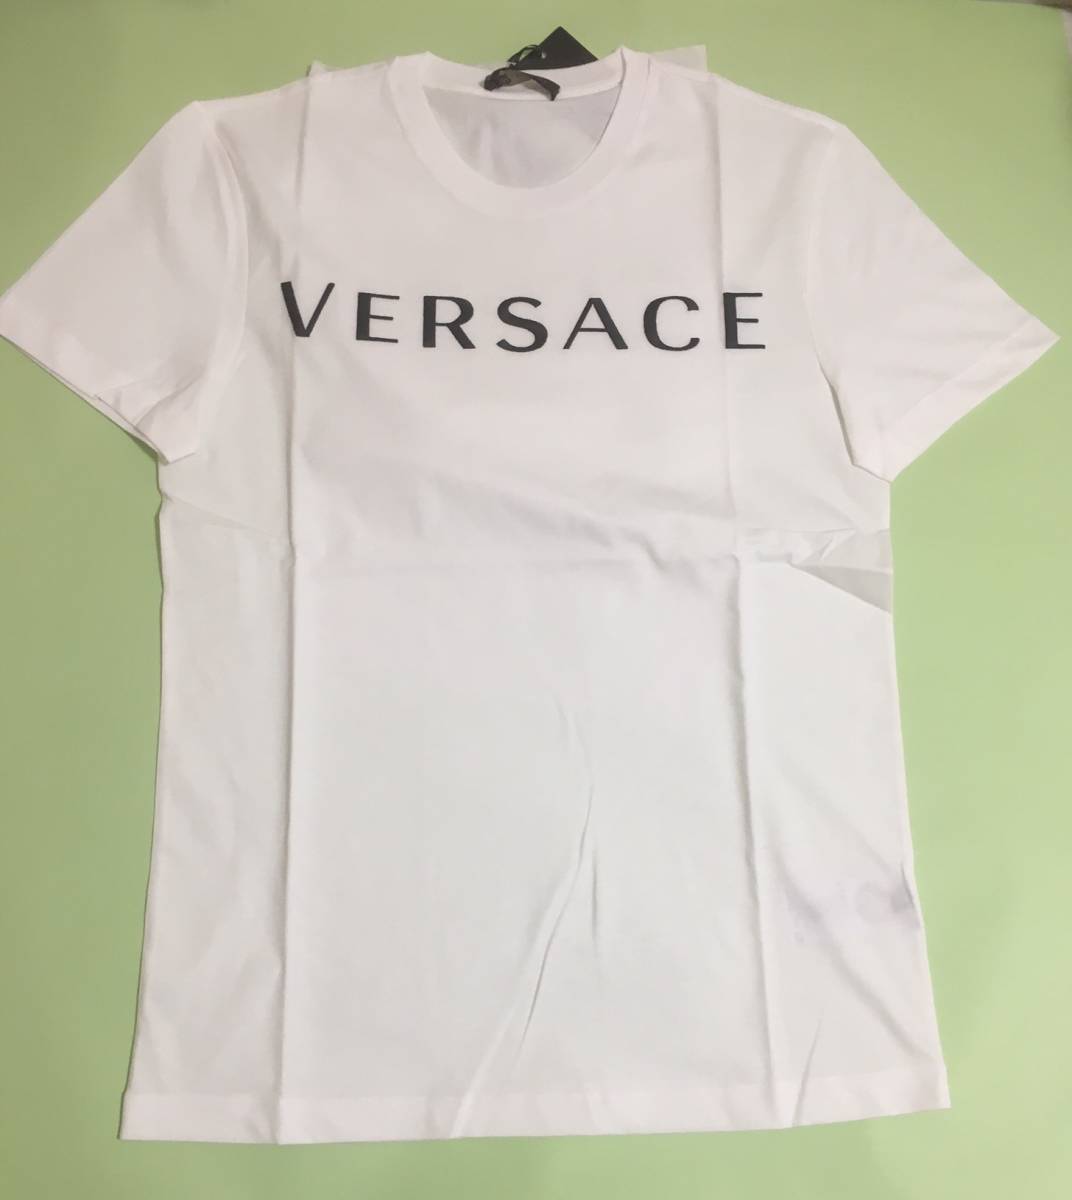 最適な価格 お得 Versace メンズ 人気定番 ロゴ Tシャツ 白 S 新品未使用 21超人気 Horizonsglobal Ca